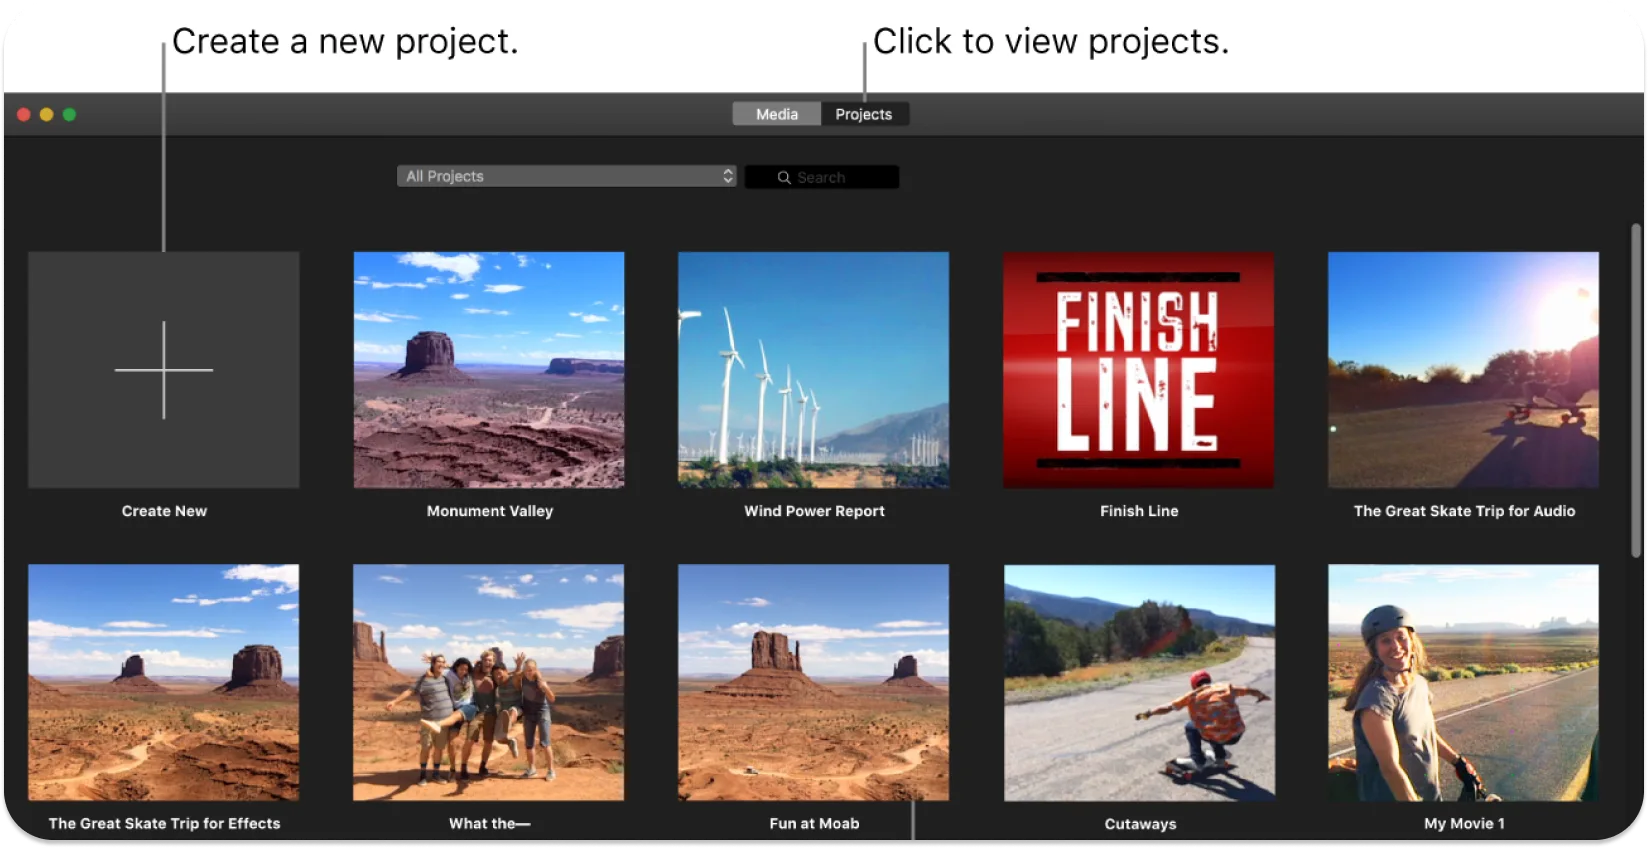 Интерфейс iMovie, отображающий массив миниатюр видеопроекта с предложением создать новый проект или открыть существующий.
